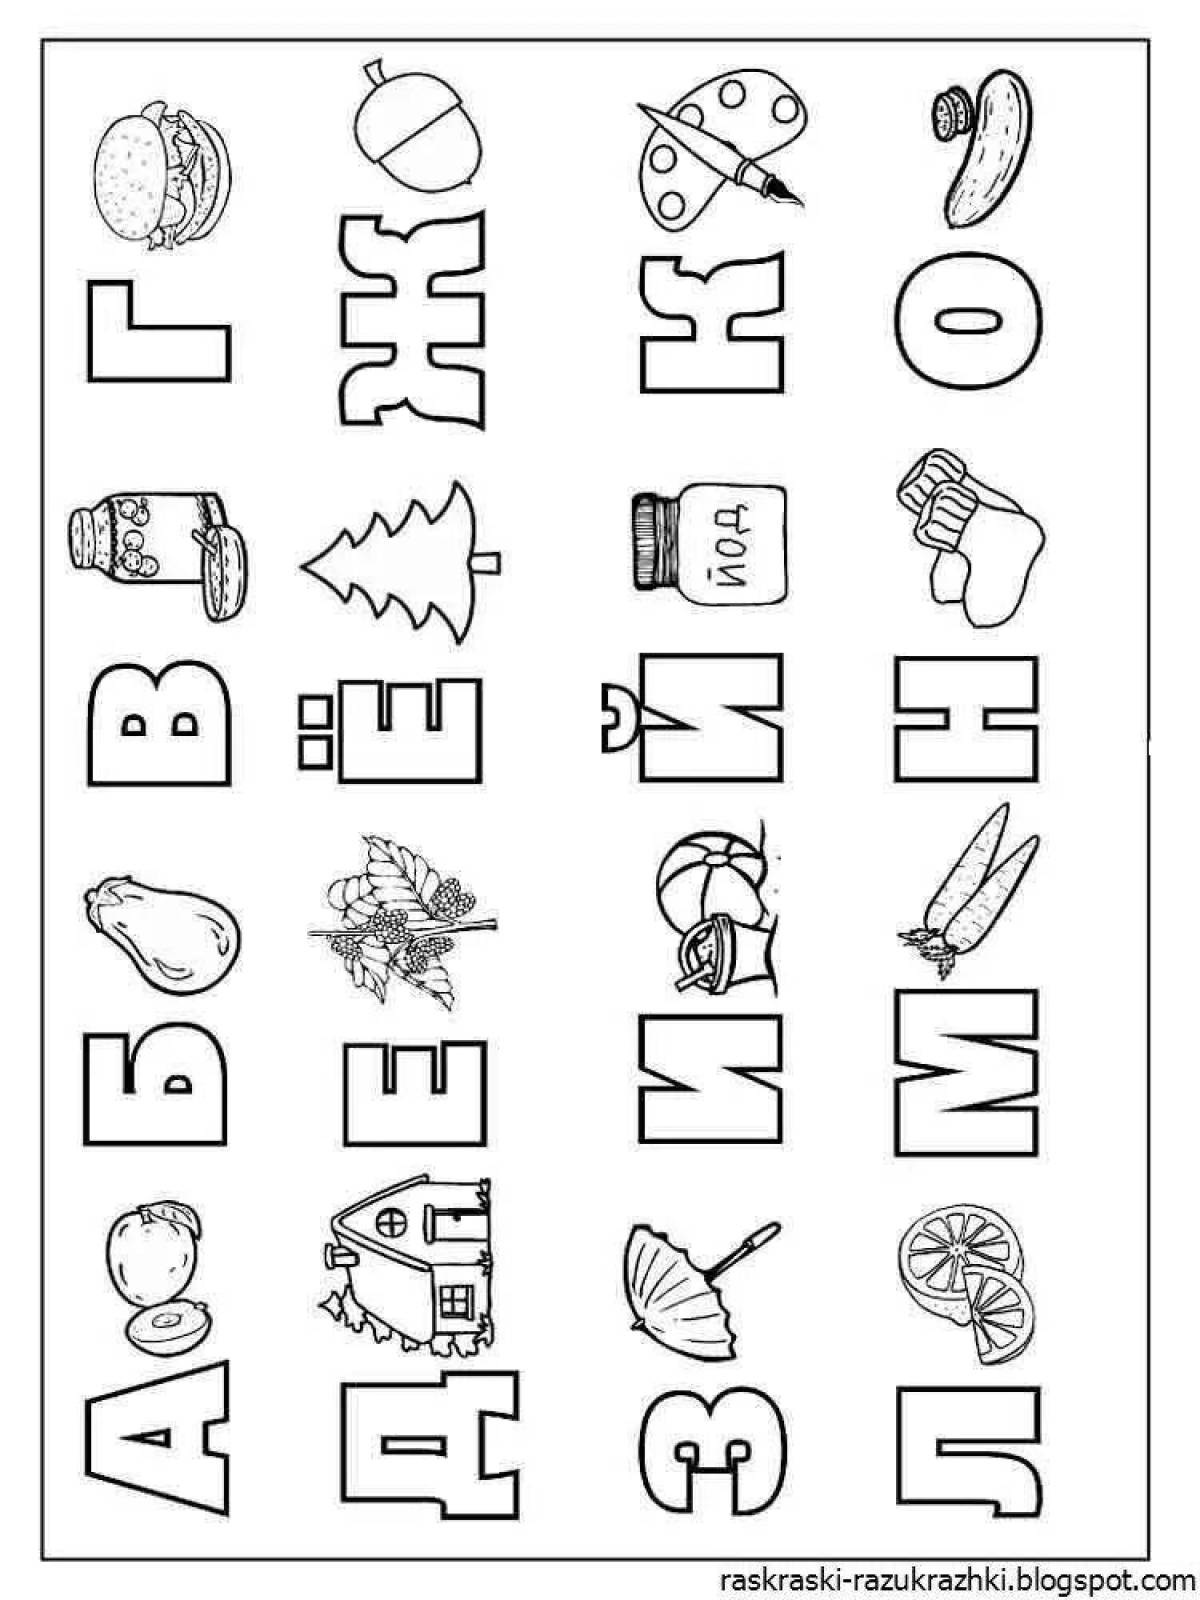 Children's alphabet coloring book